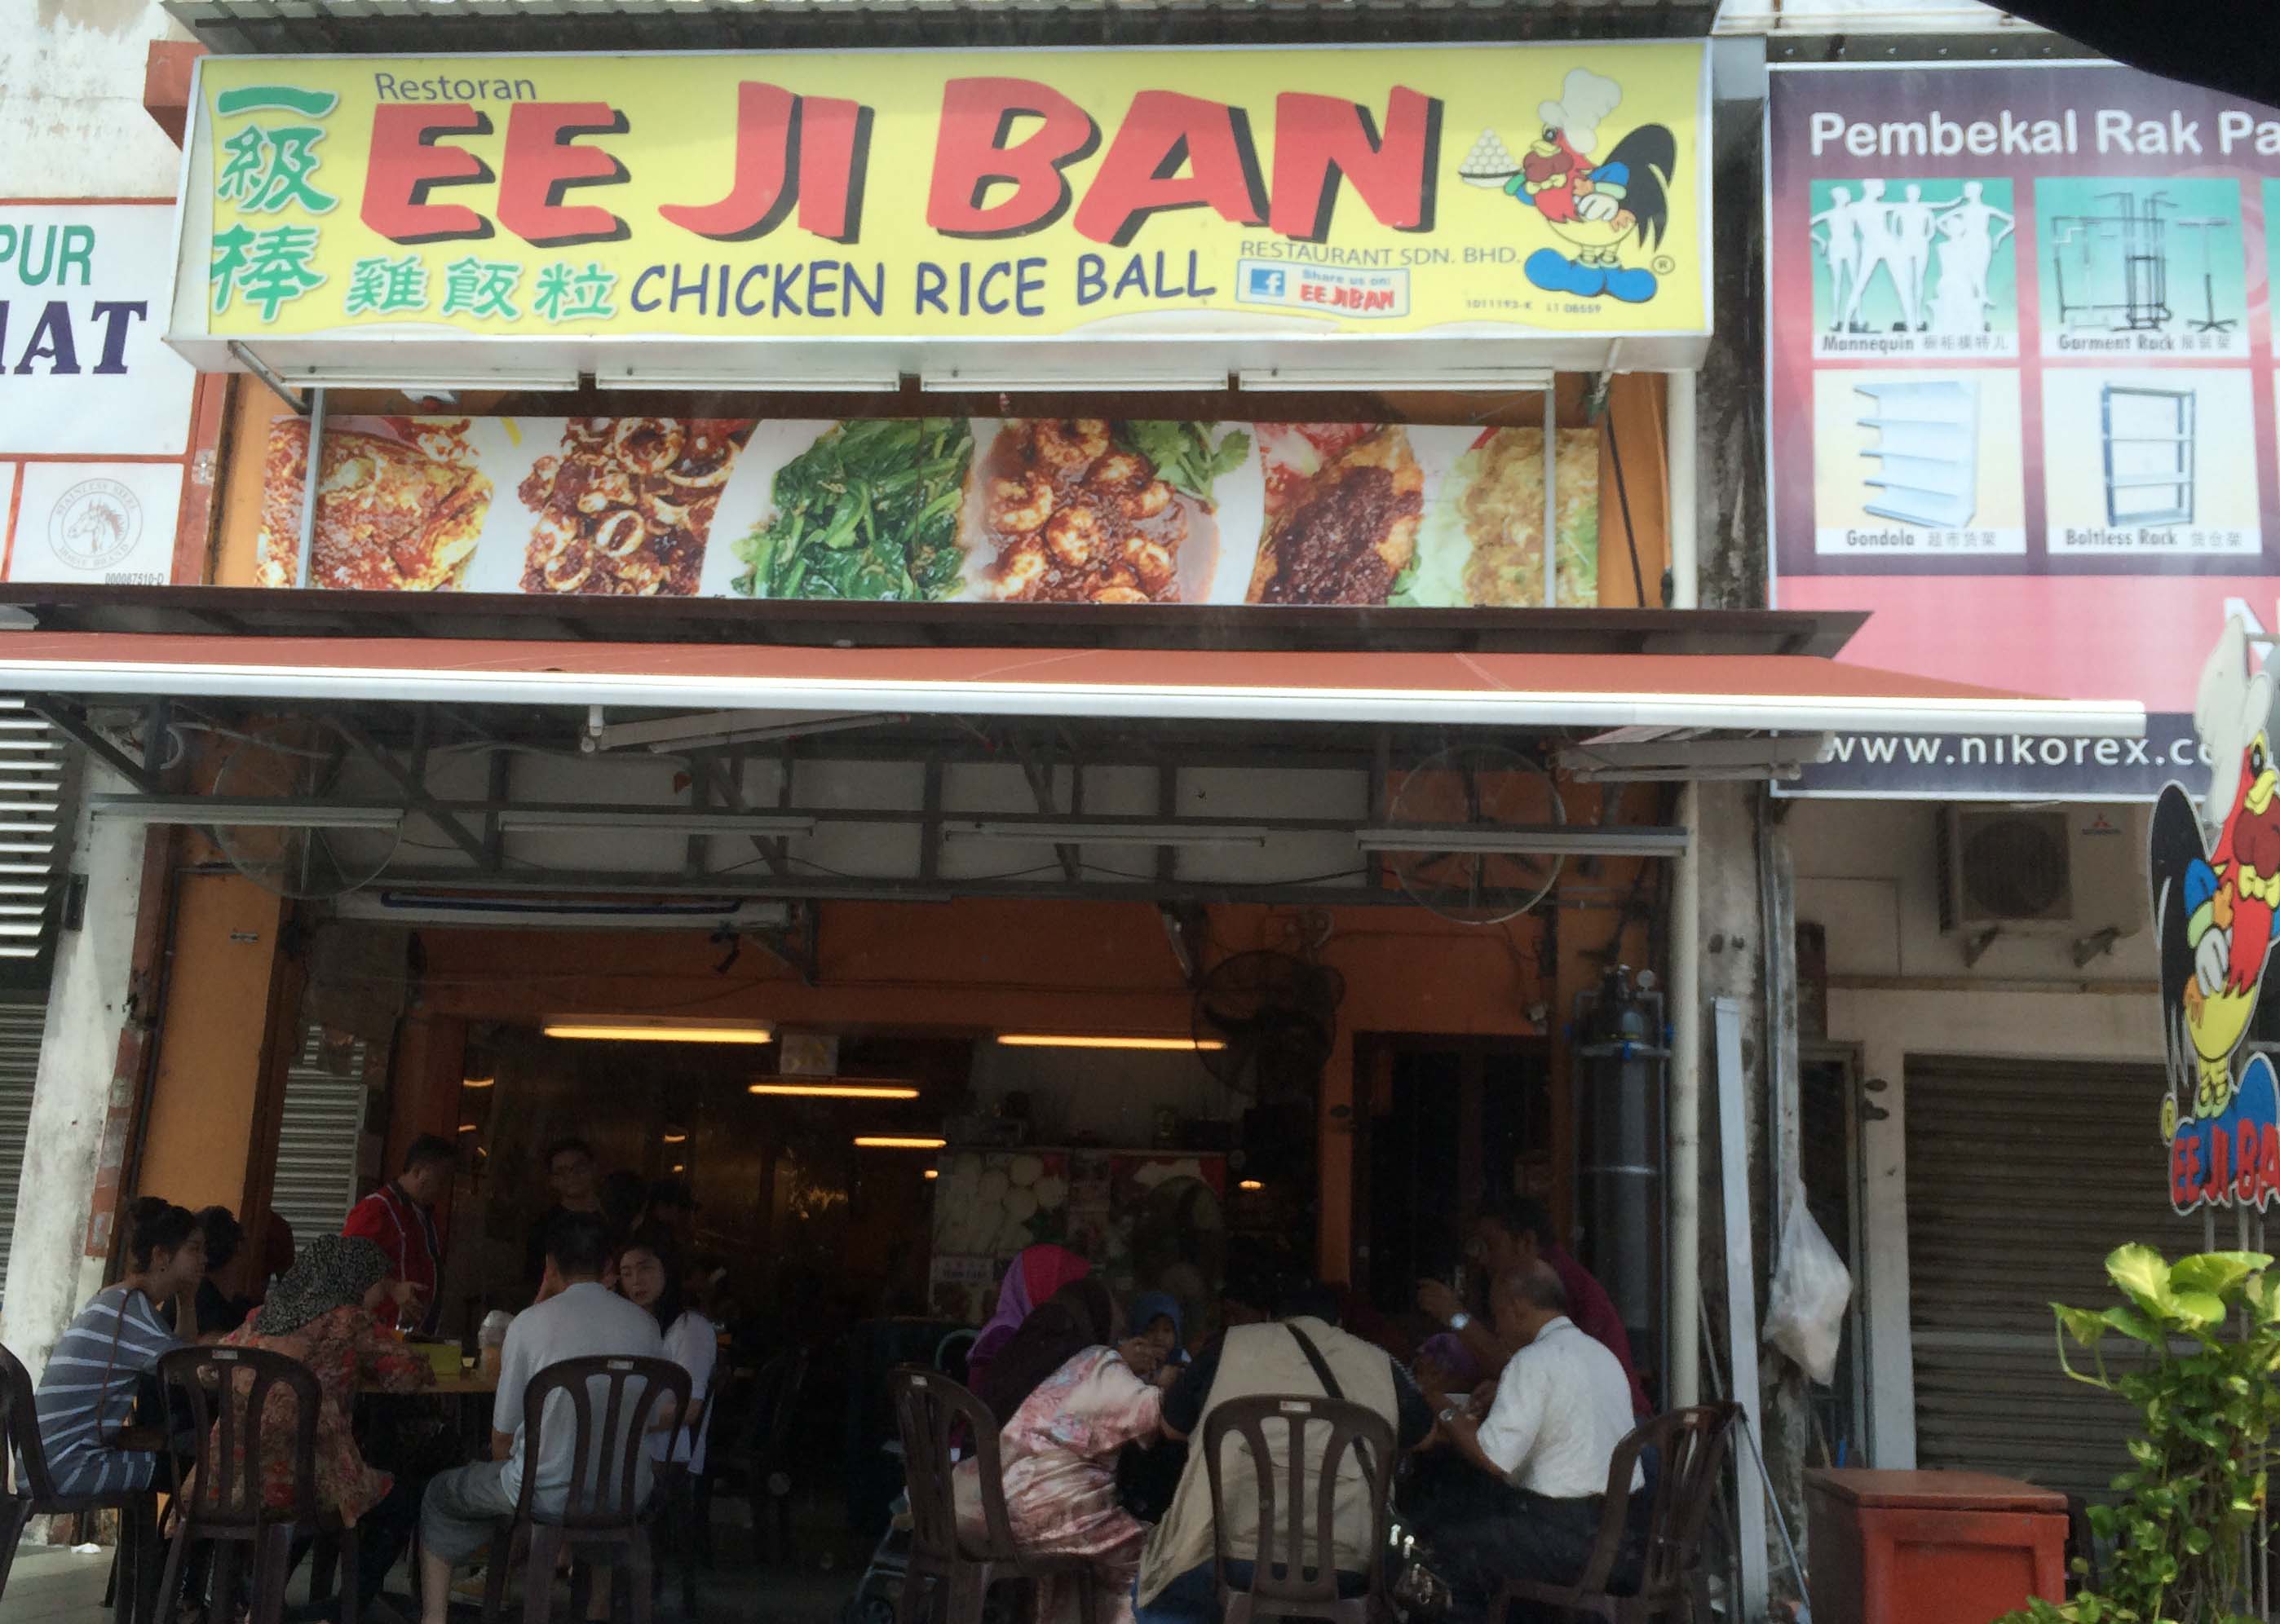 Chicken Rice Ball @ Ee Ji Ban, Melaka Raya 3